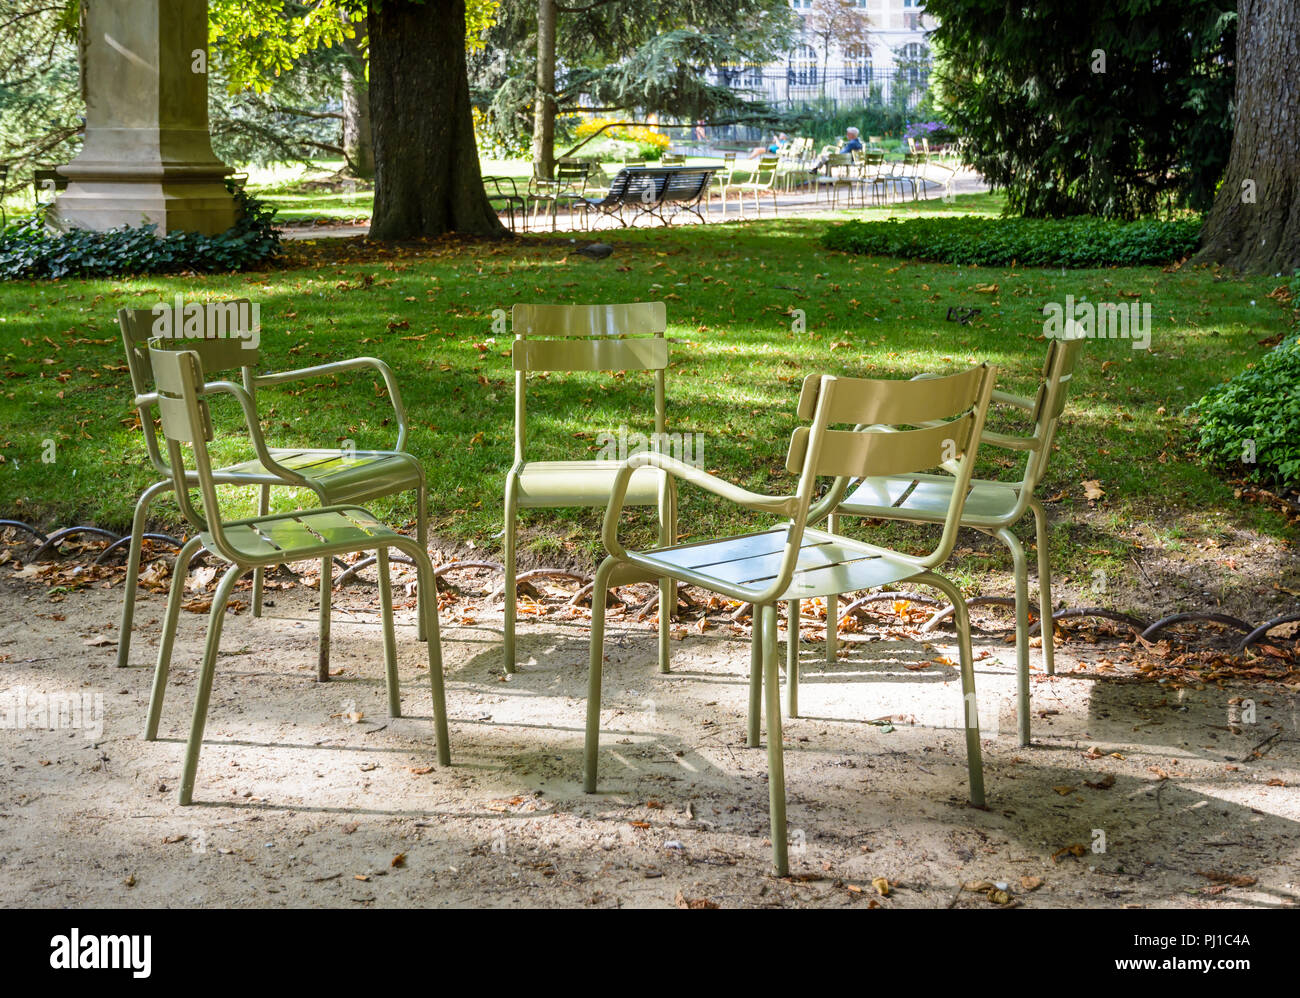 Grüne typischen Metall Gartenmöbel im Kreis in einer Gasse des Jardin du  Luxembourg in Paris, Frankreich versammelt, die von einem sonnigen  Sommermorgen Stockfotografie - Alamy